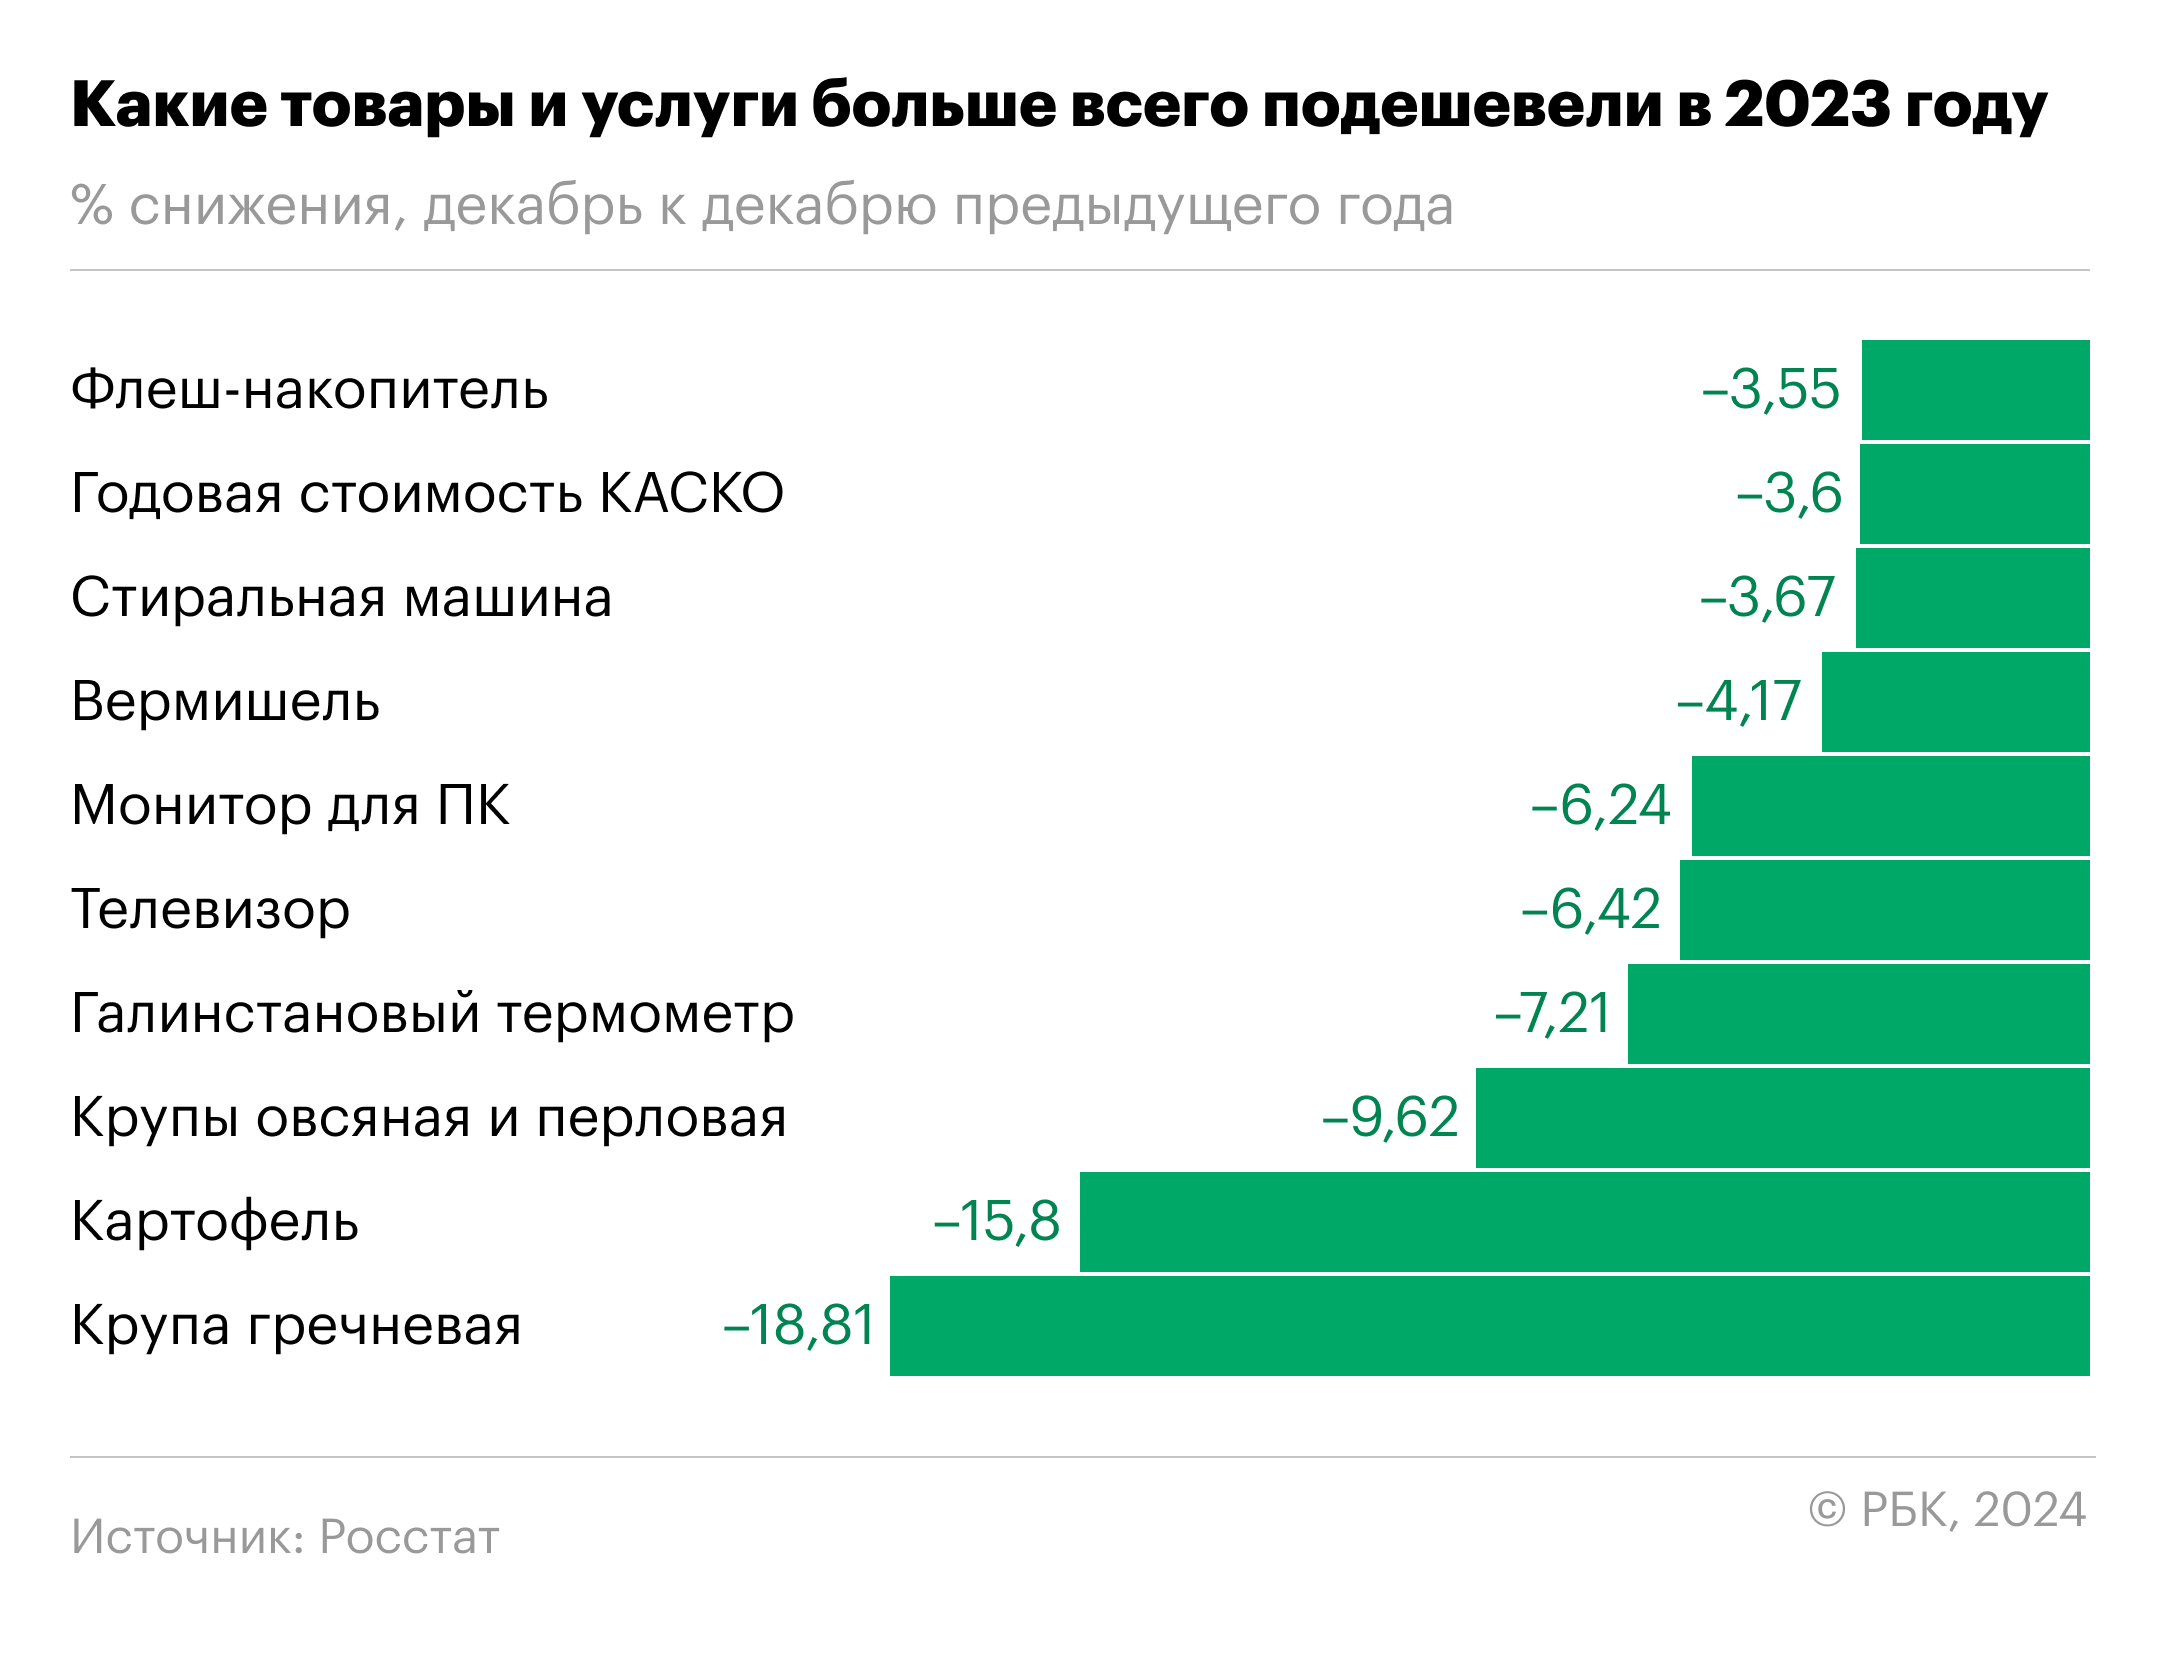 Мониторы и крупа: что стало лидером по снижению цен в России. Инфографика